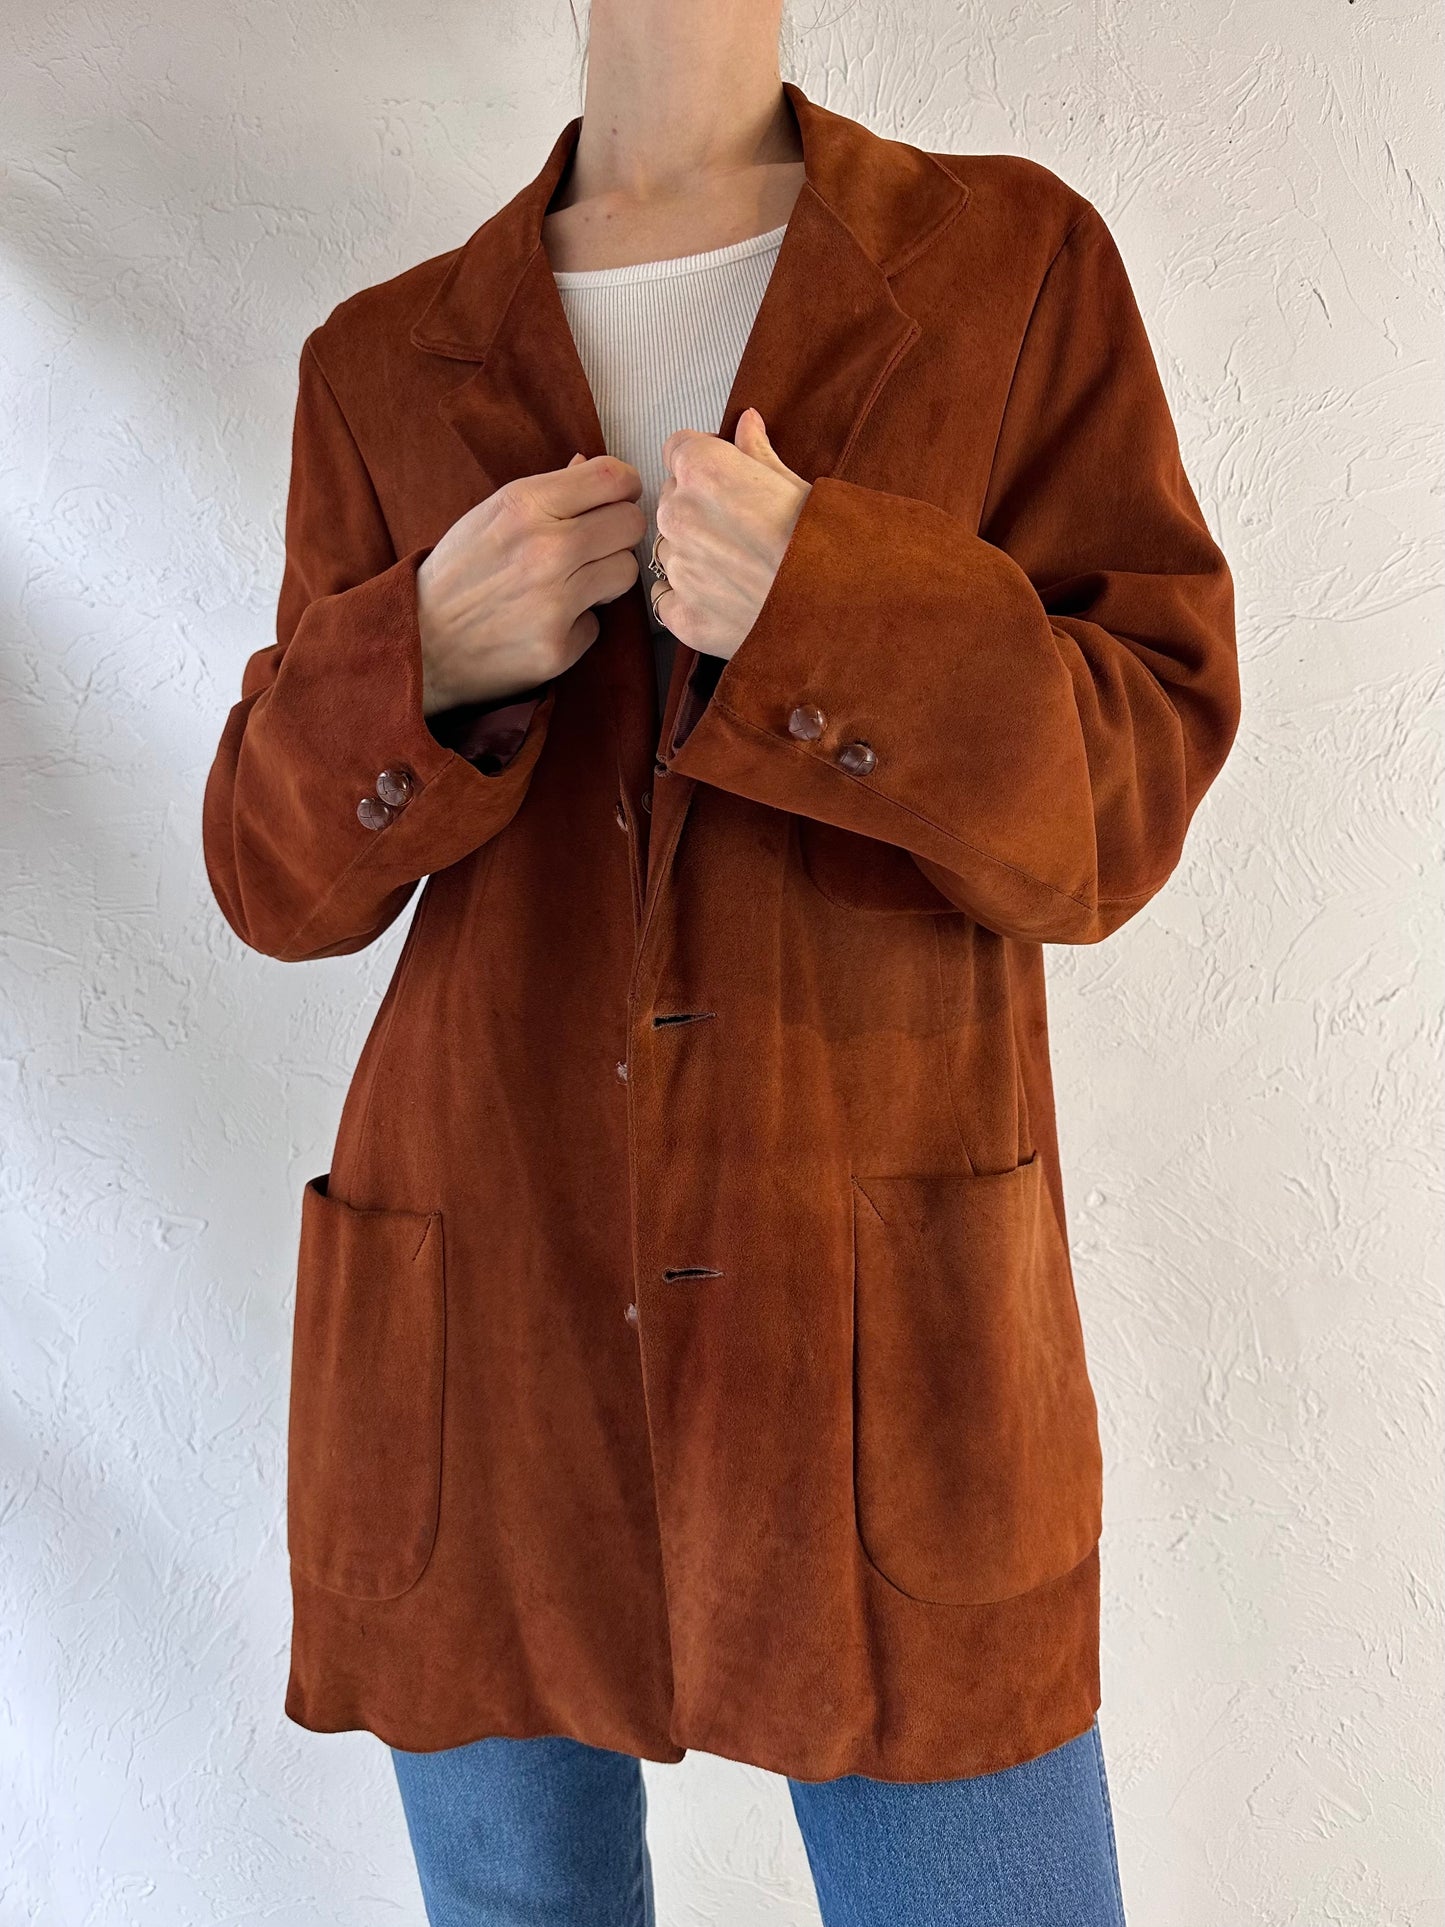 90s 'Fleischer' Brown Suede Leather Jacket / Medium